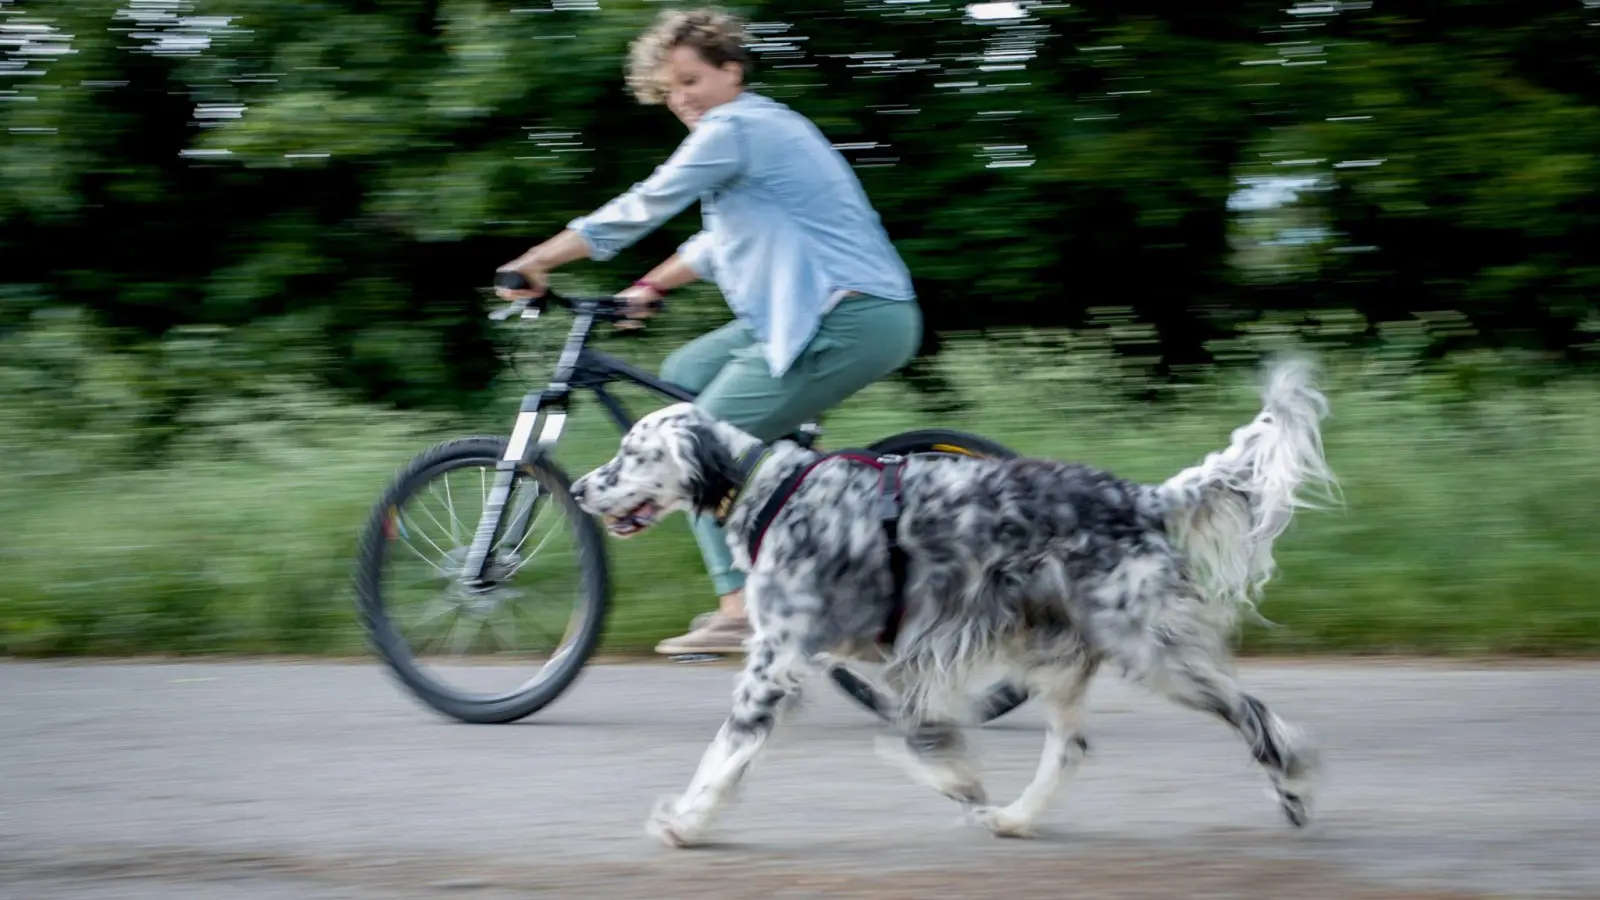 Das gemeinsame Fahren mit Rad und Hund sollte zunächst in einer verkehrsberuhigten Zone oder auf einem Parkplatz geübt werden. (Foto: Frank Rumpenhorst/dpa-tmn)